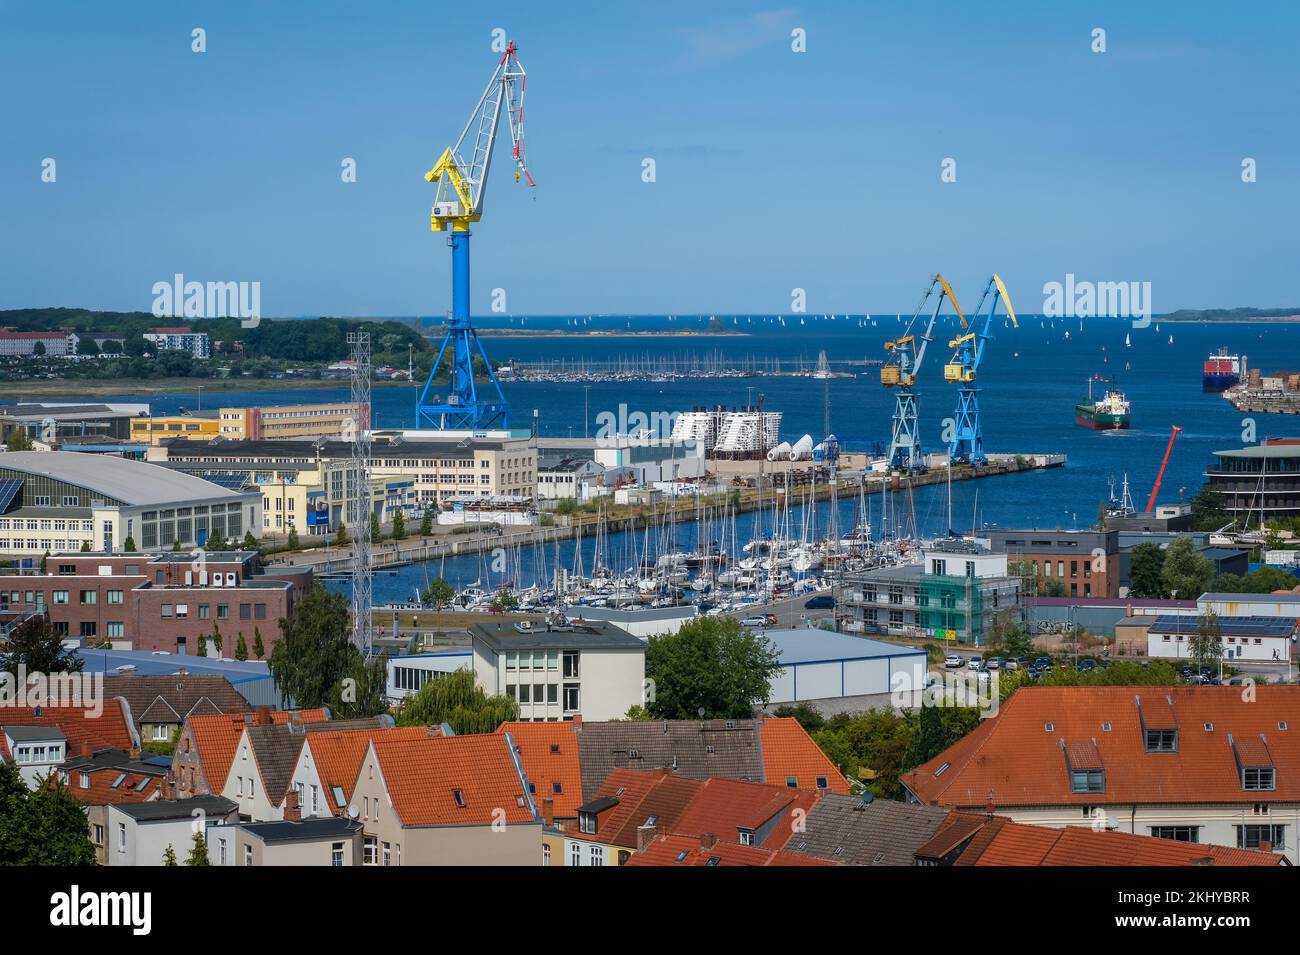 Wismar, Meclemburgo-Pomerania occidentale, Germania - vista sulla città vecchia e sul porto di Wismar, dietro i cantieri navali MV Wismar-Rostock-Stralsund. Il cantiere navale delle navi da crociera Foto Stock